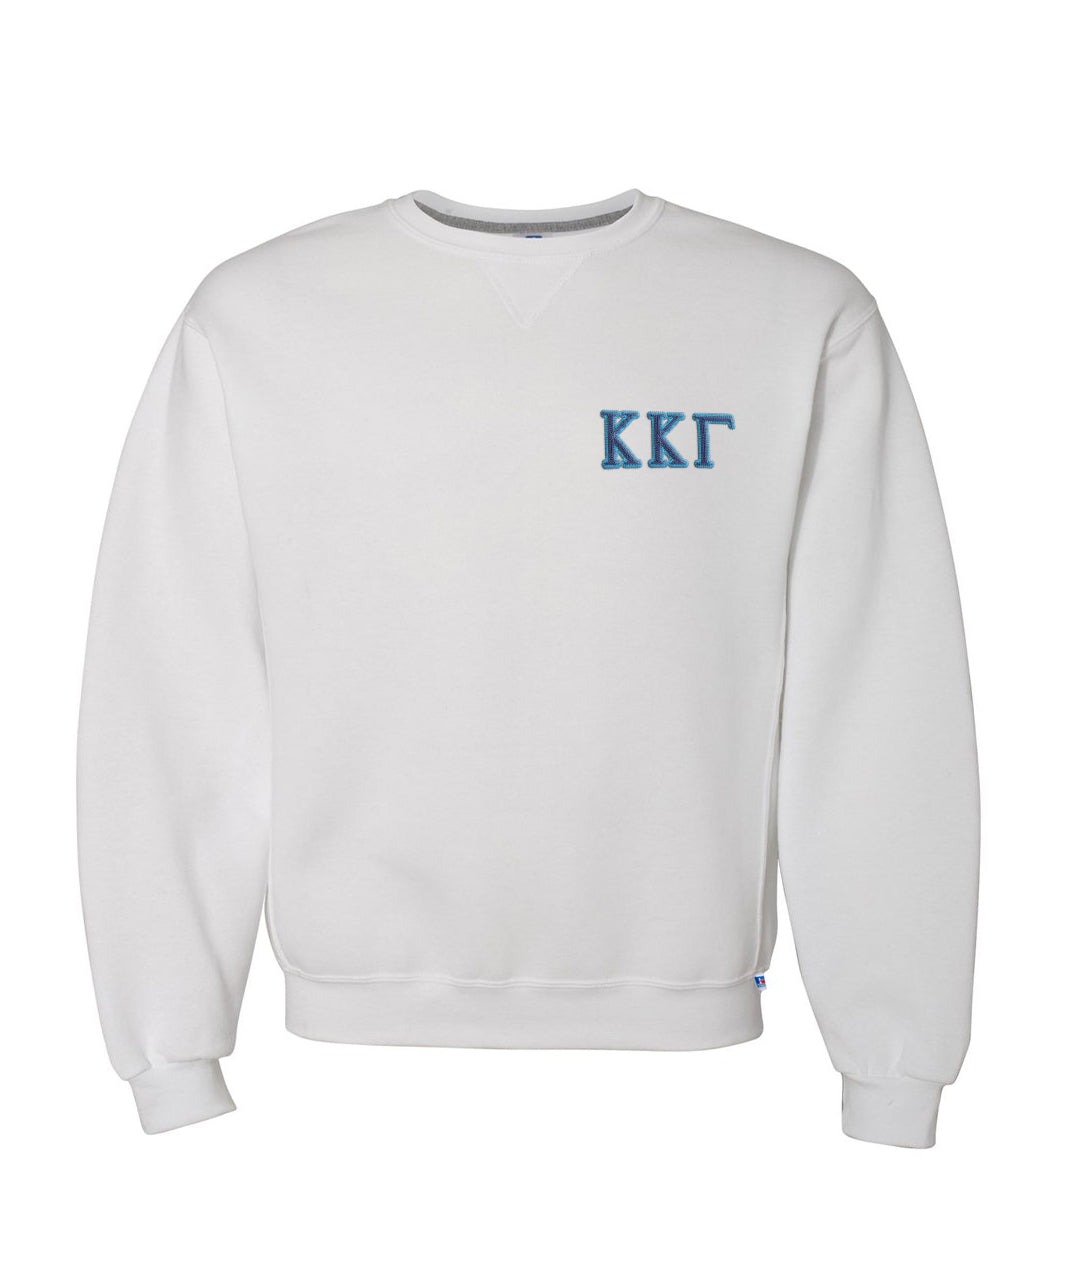 Kappa Kappa Gamma Embroidered Crewneck Sweatshirt